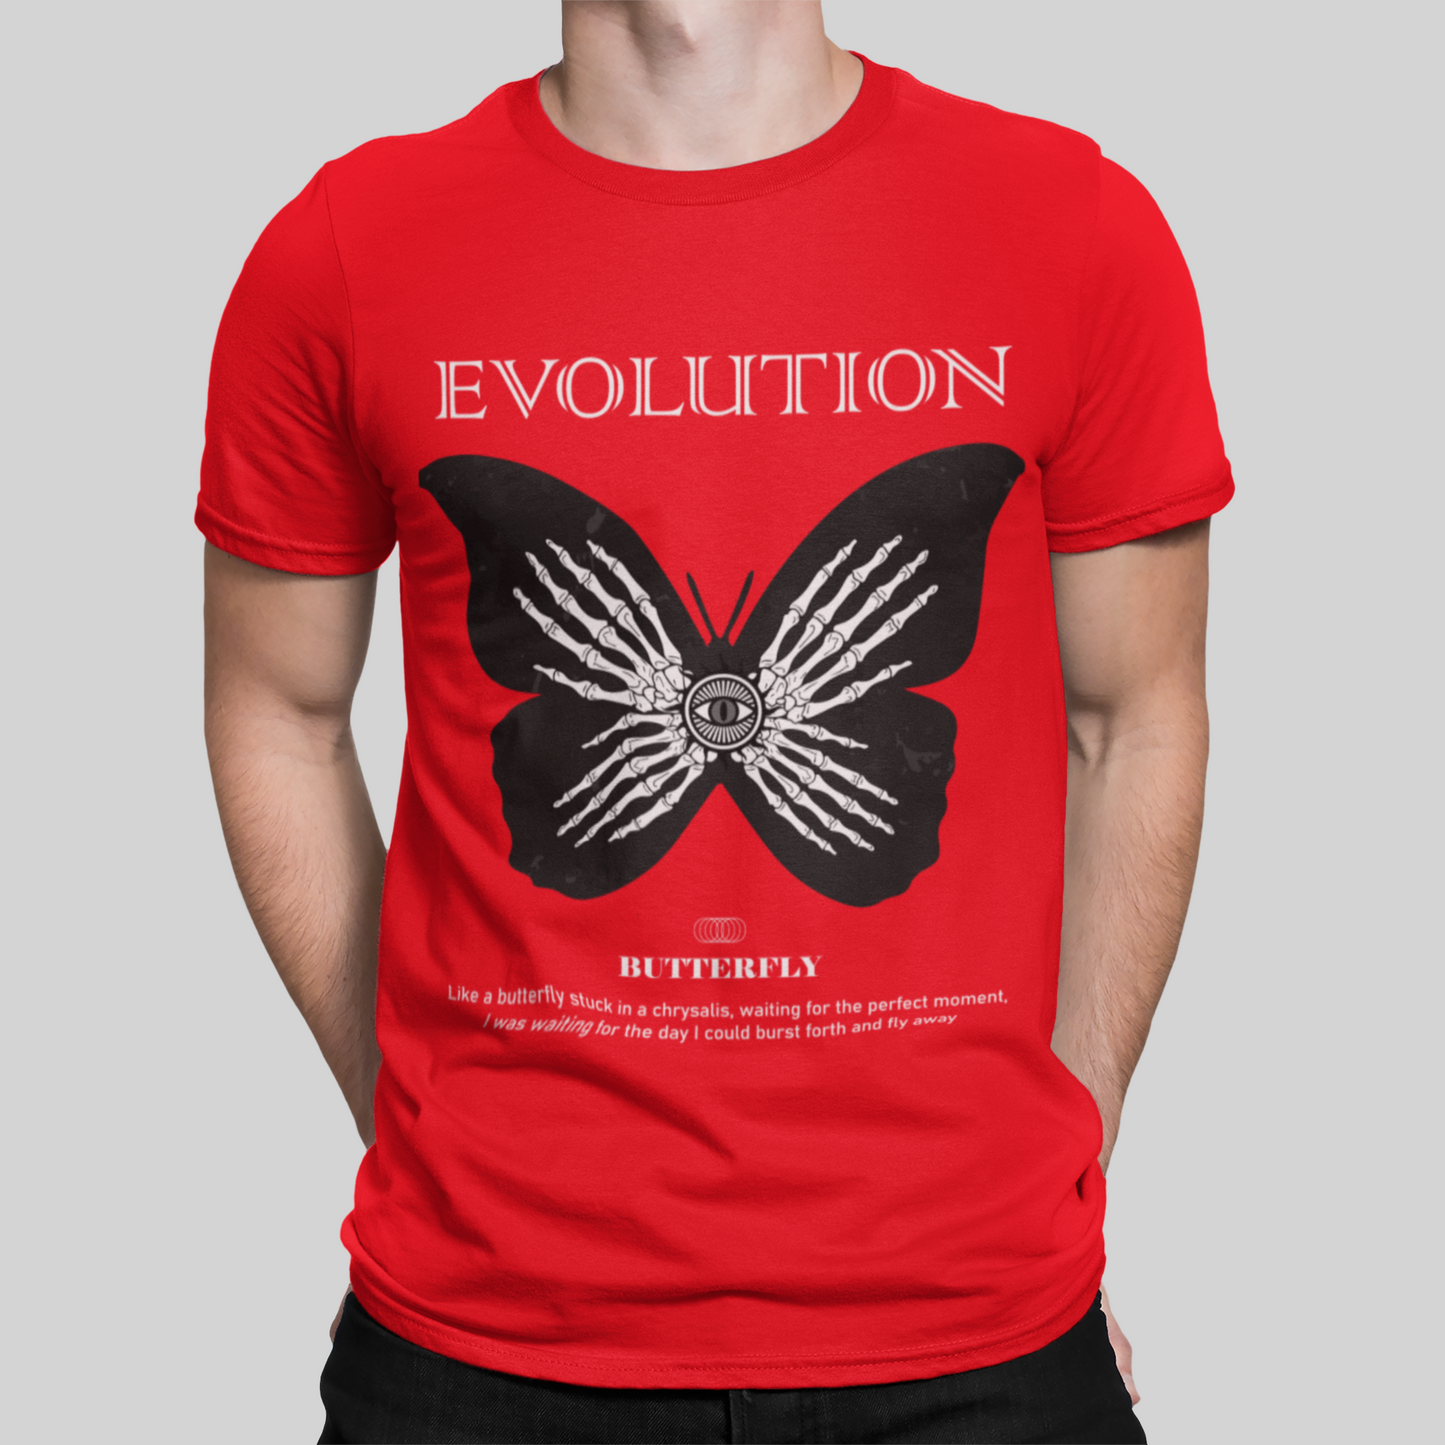 Evolution Red T-Shirt For Men